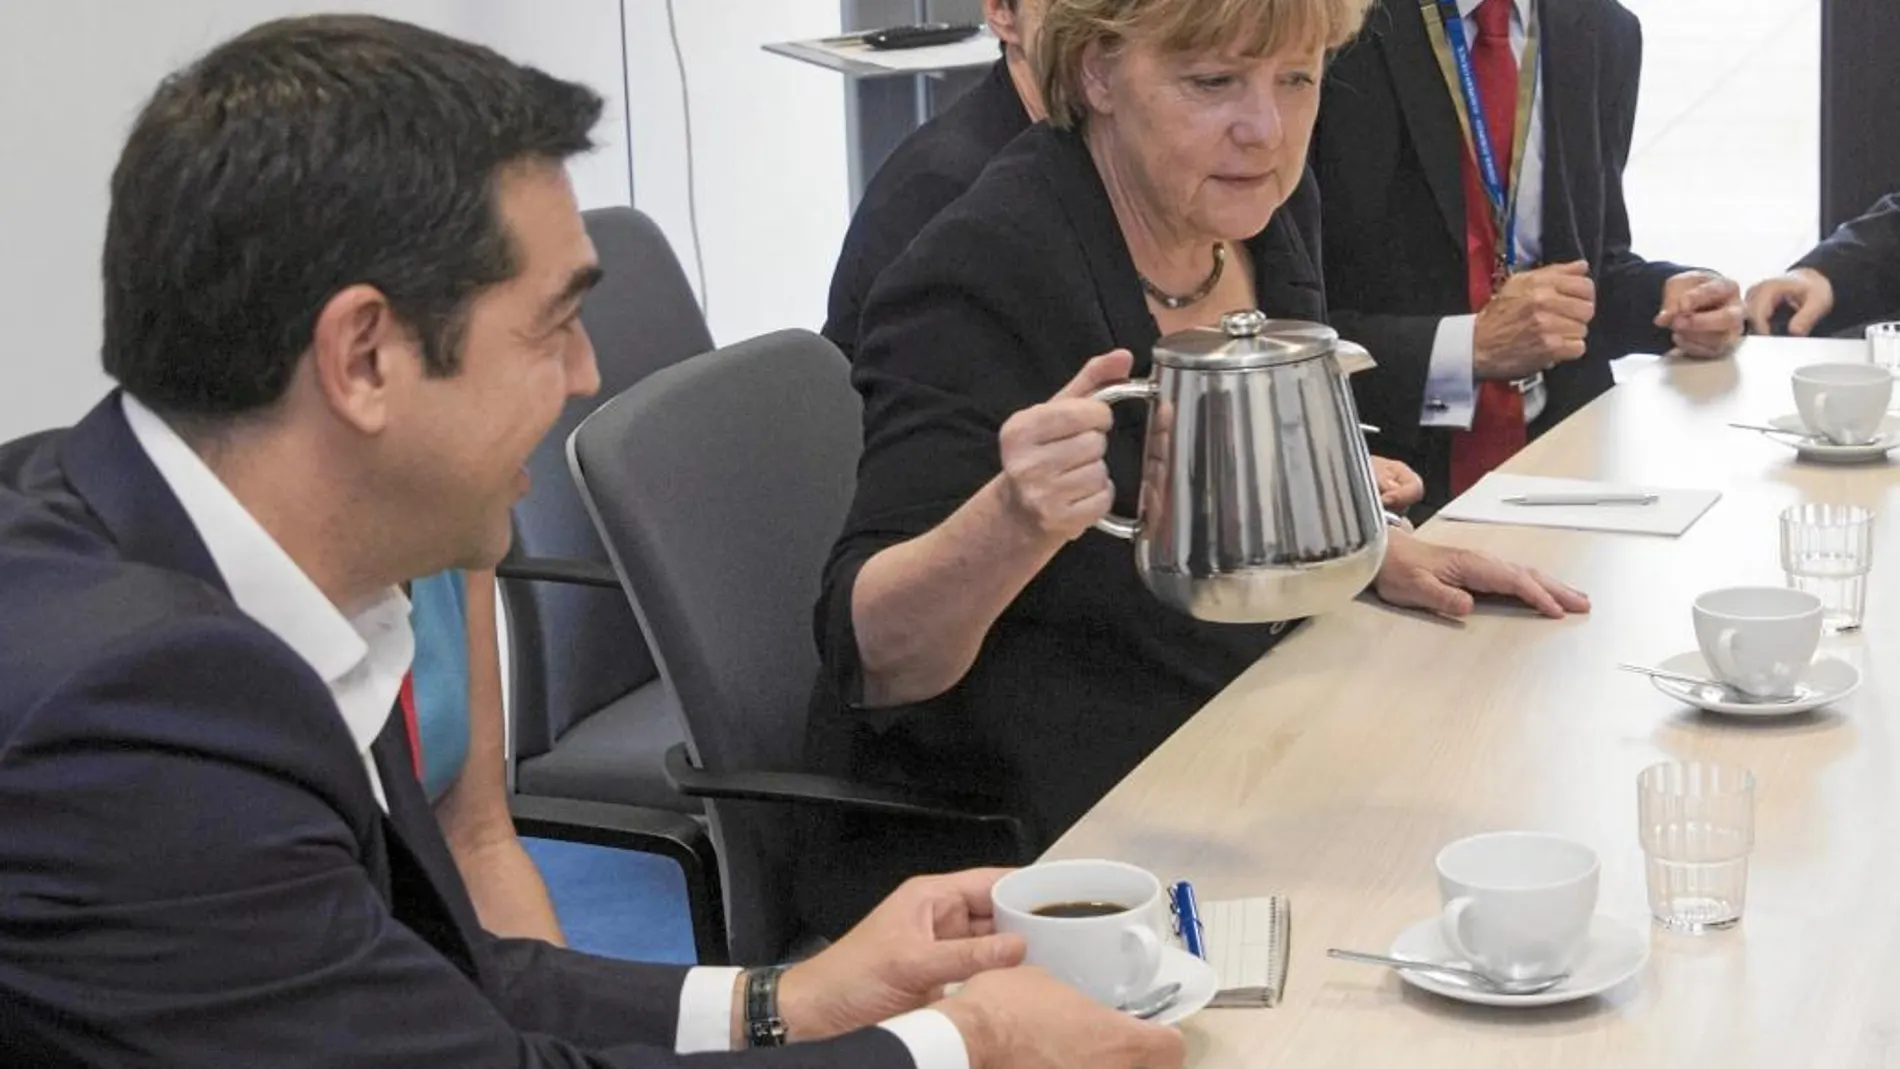 CAFÉ PARA TODOS. Angela Merkel sirve café a Alexis Tsipras, ayer, durante la reunión de líderes europeos en Bruselas